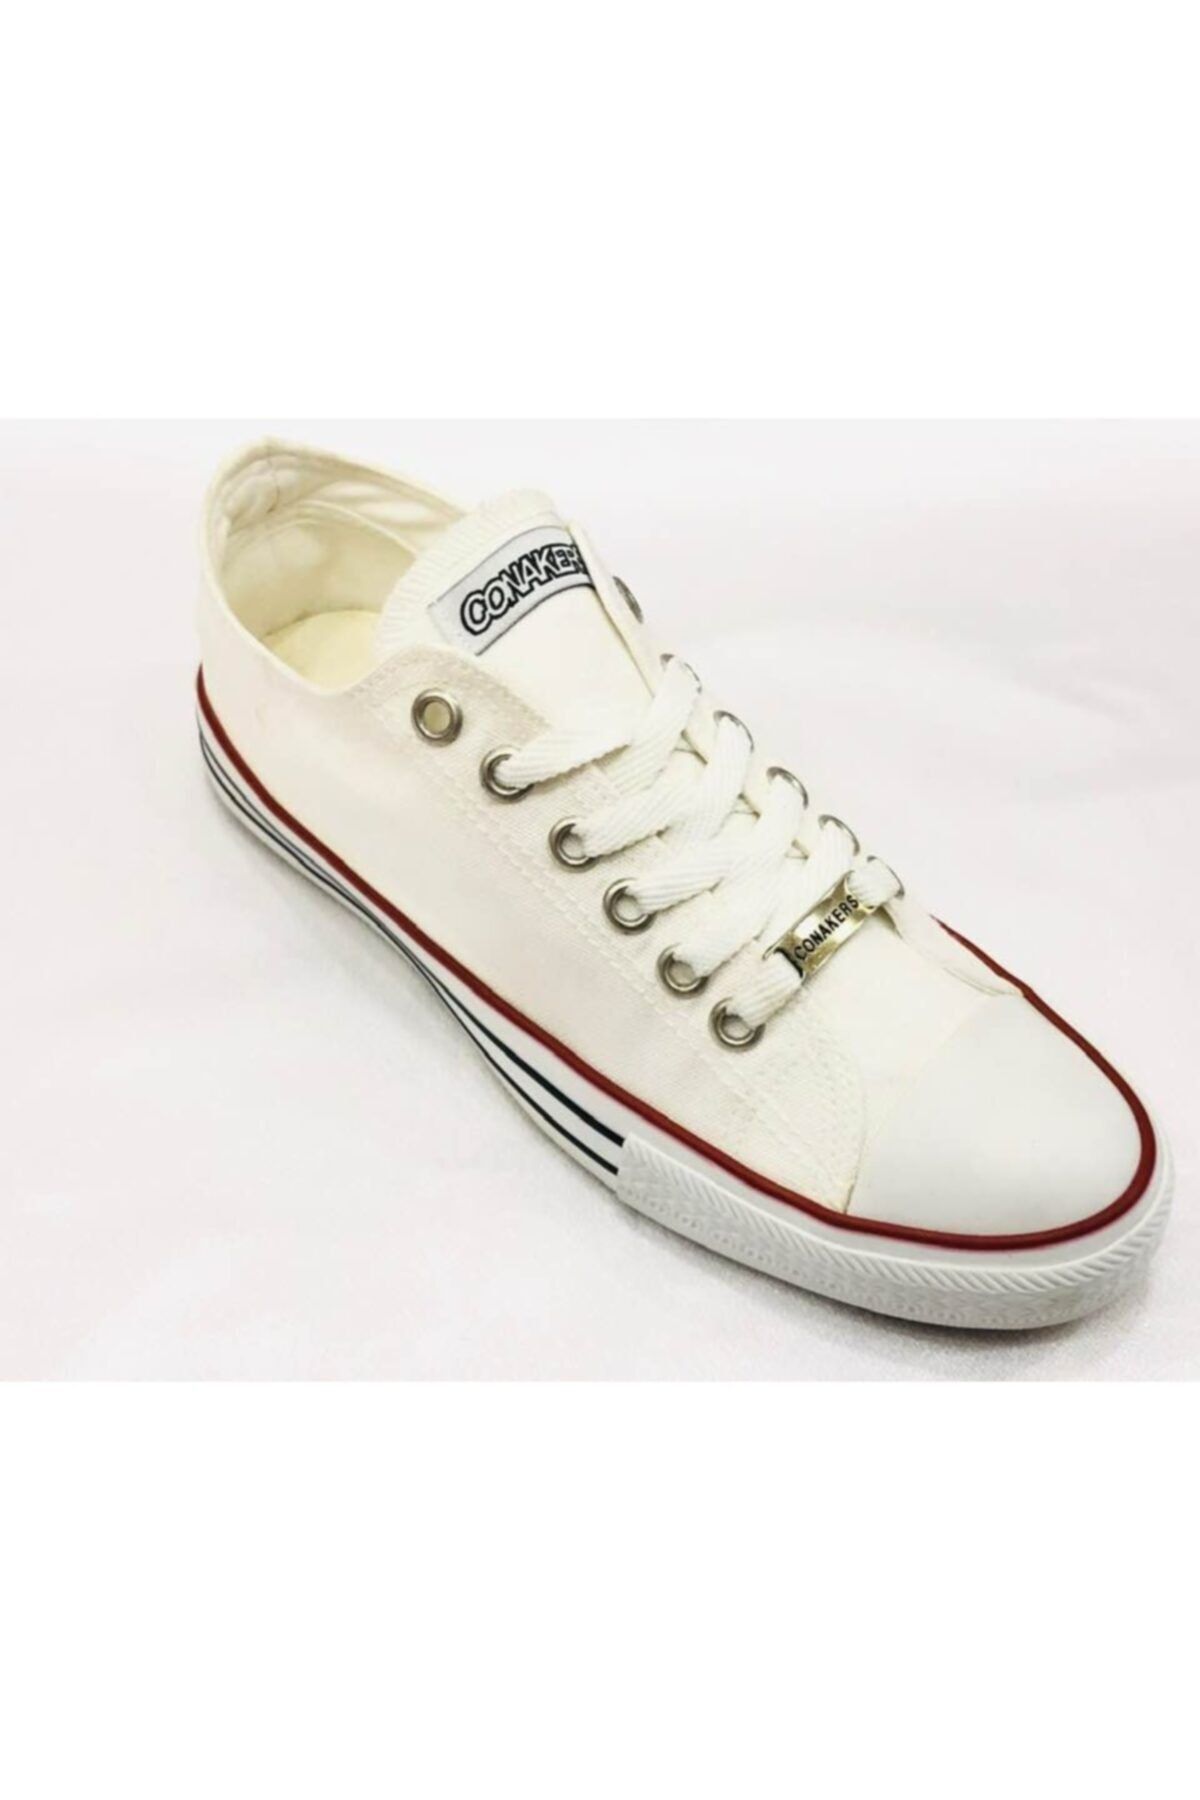 Conakers Convers Beyaz Unısex Spor Sneakers Ayakkabı